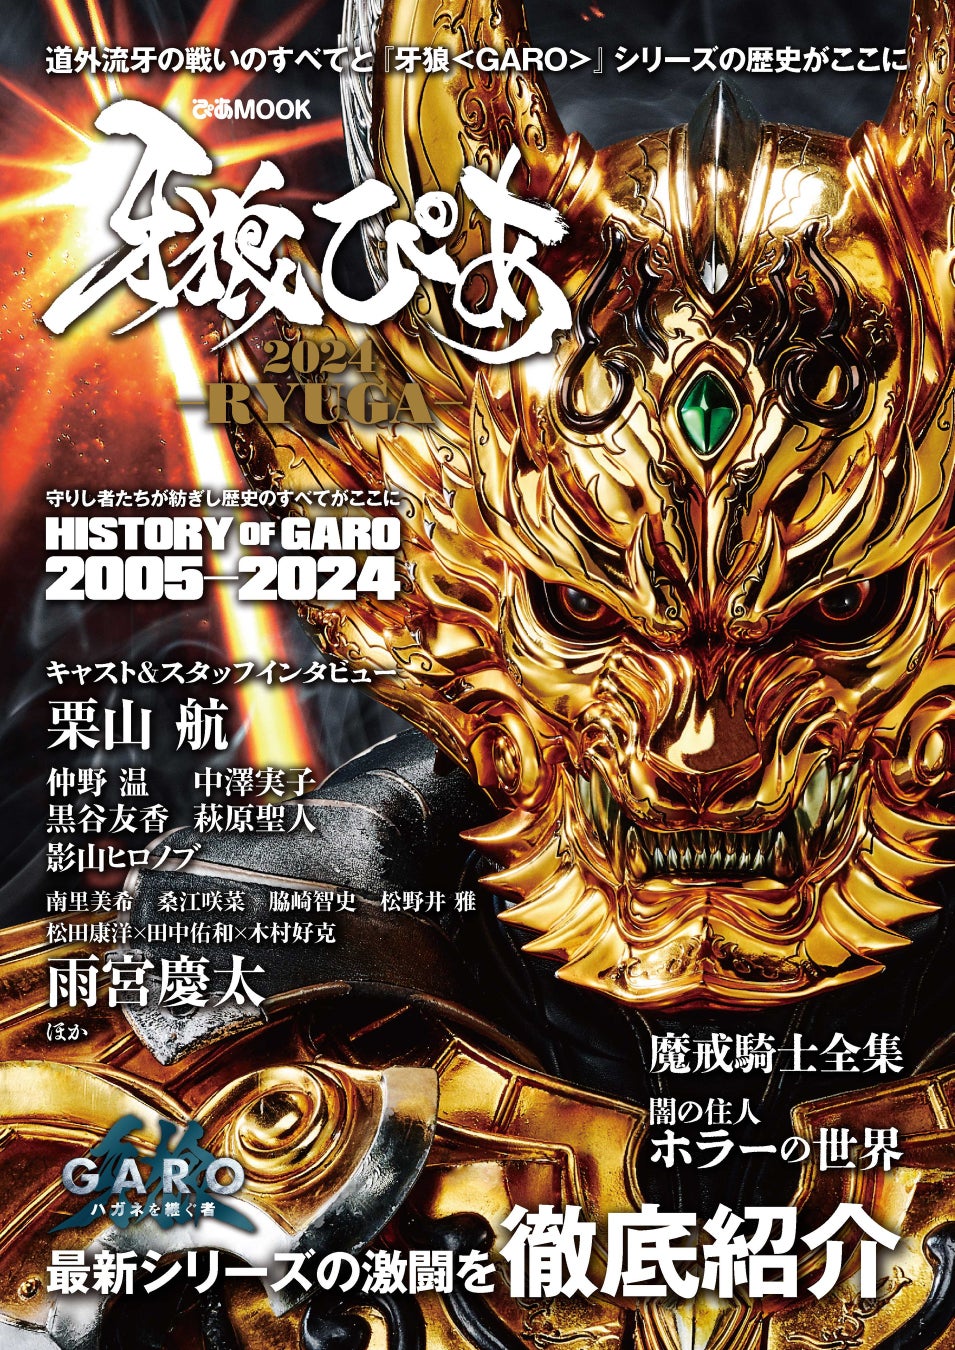 『ZEROTOKYO』大人気パーティの1周年イベントを開催！KABUKICHO TOWER ZEROTOKYO「GOLD DISC」1st Anniversary